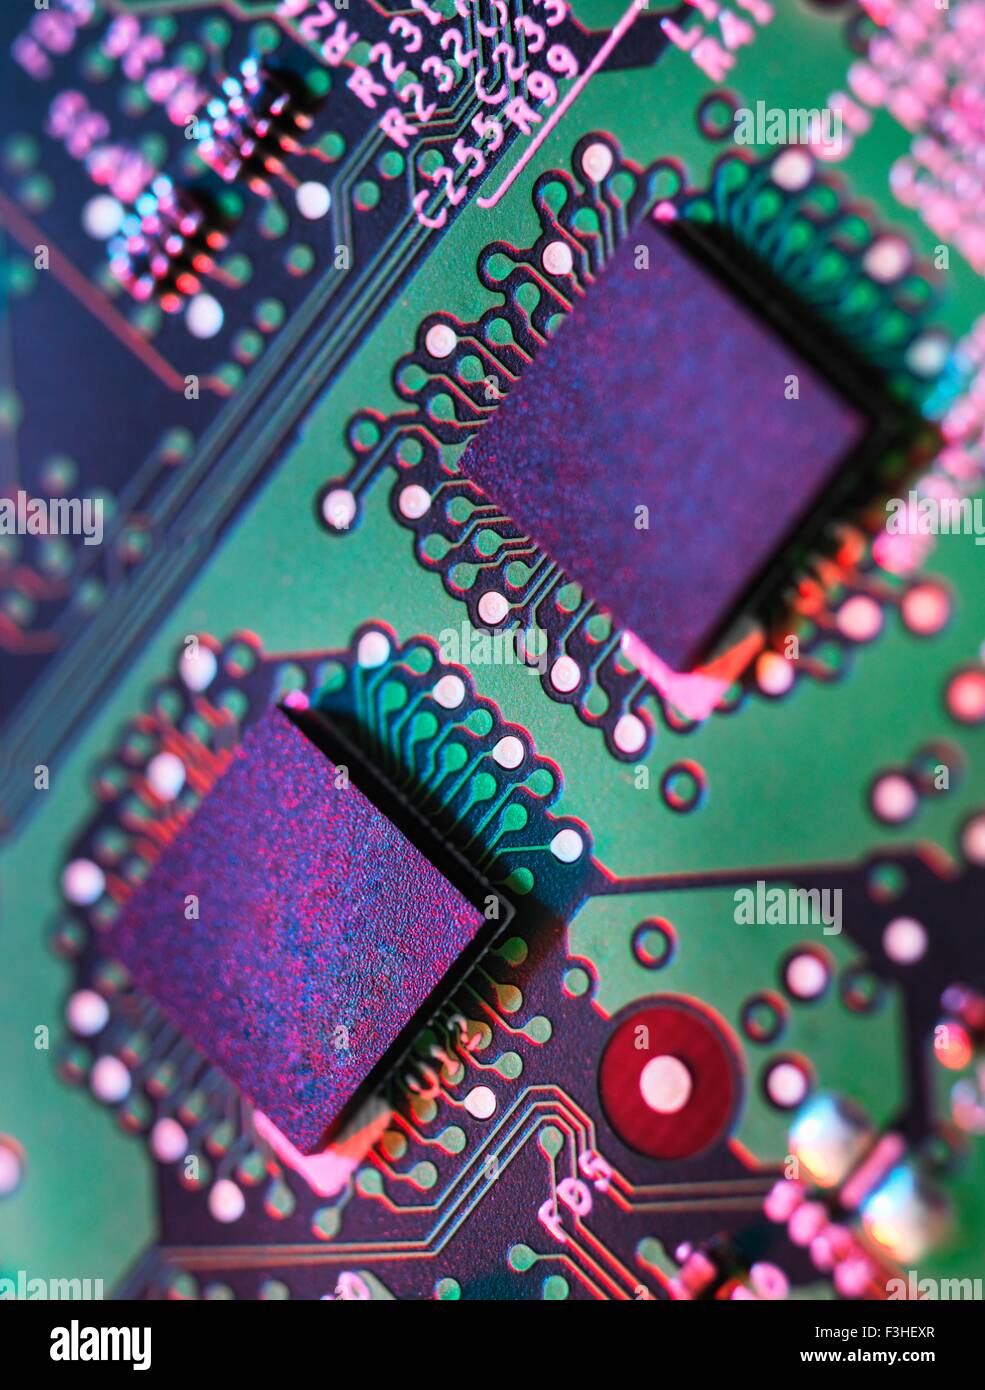 Cerrar detalle de color verde y púrpura placa de circuitos de computadora Foto de stock